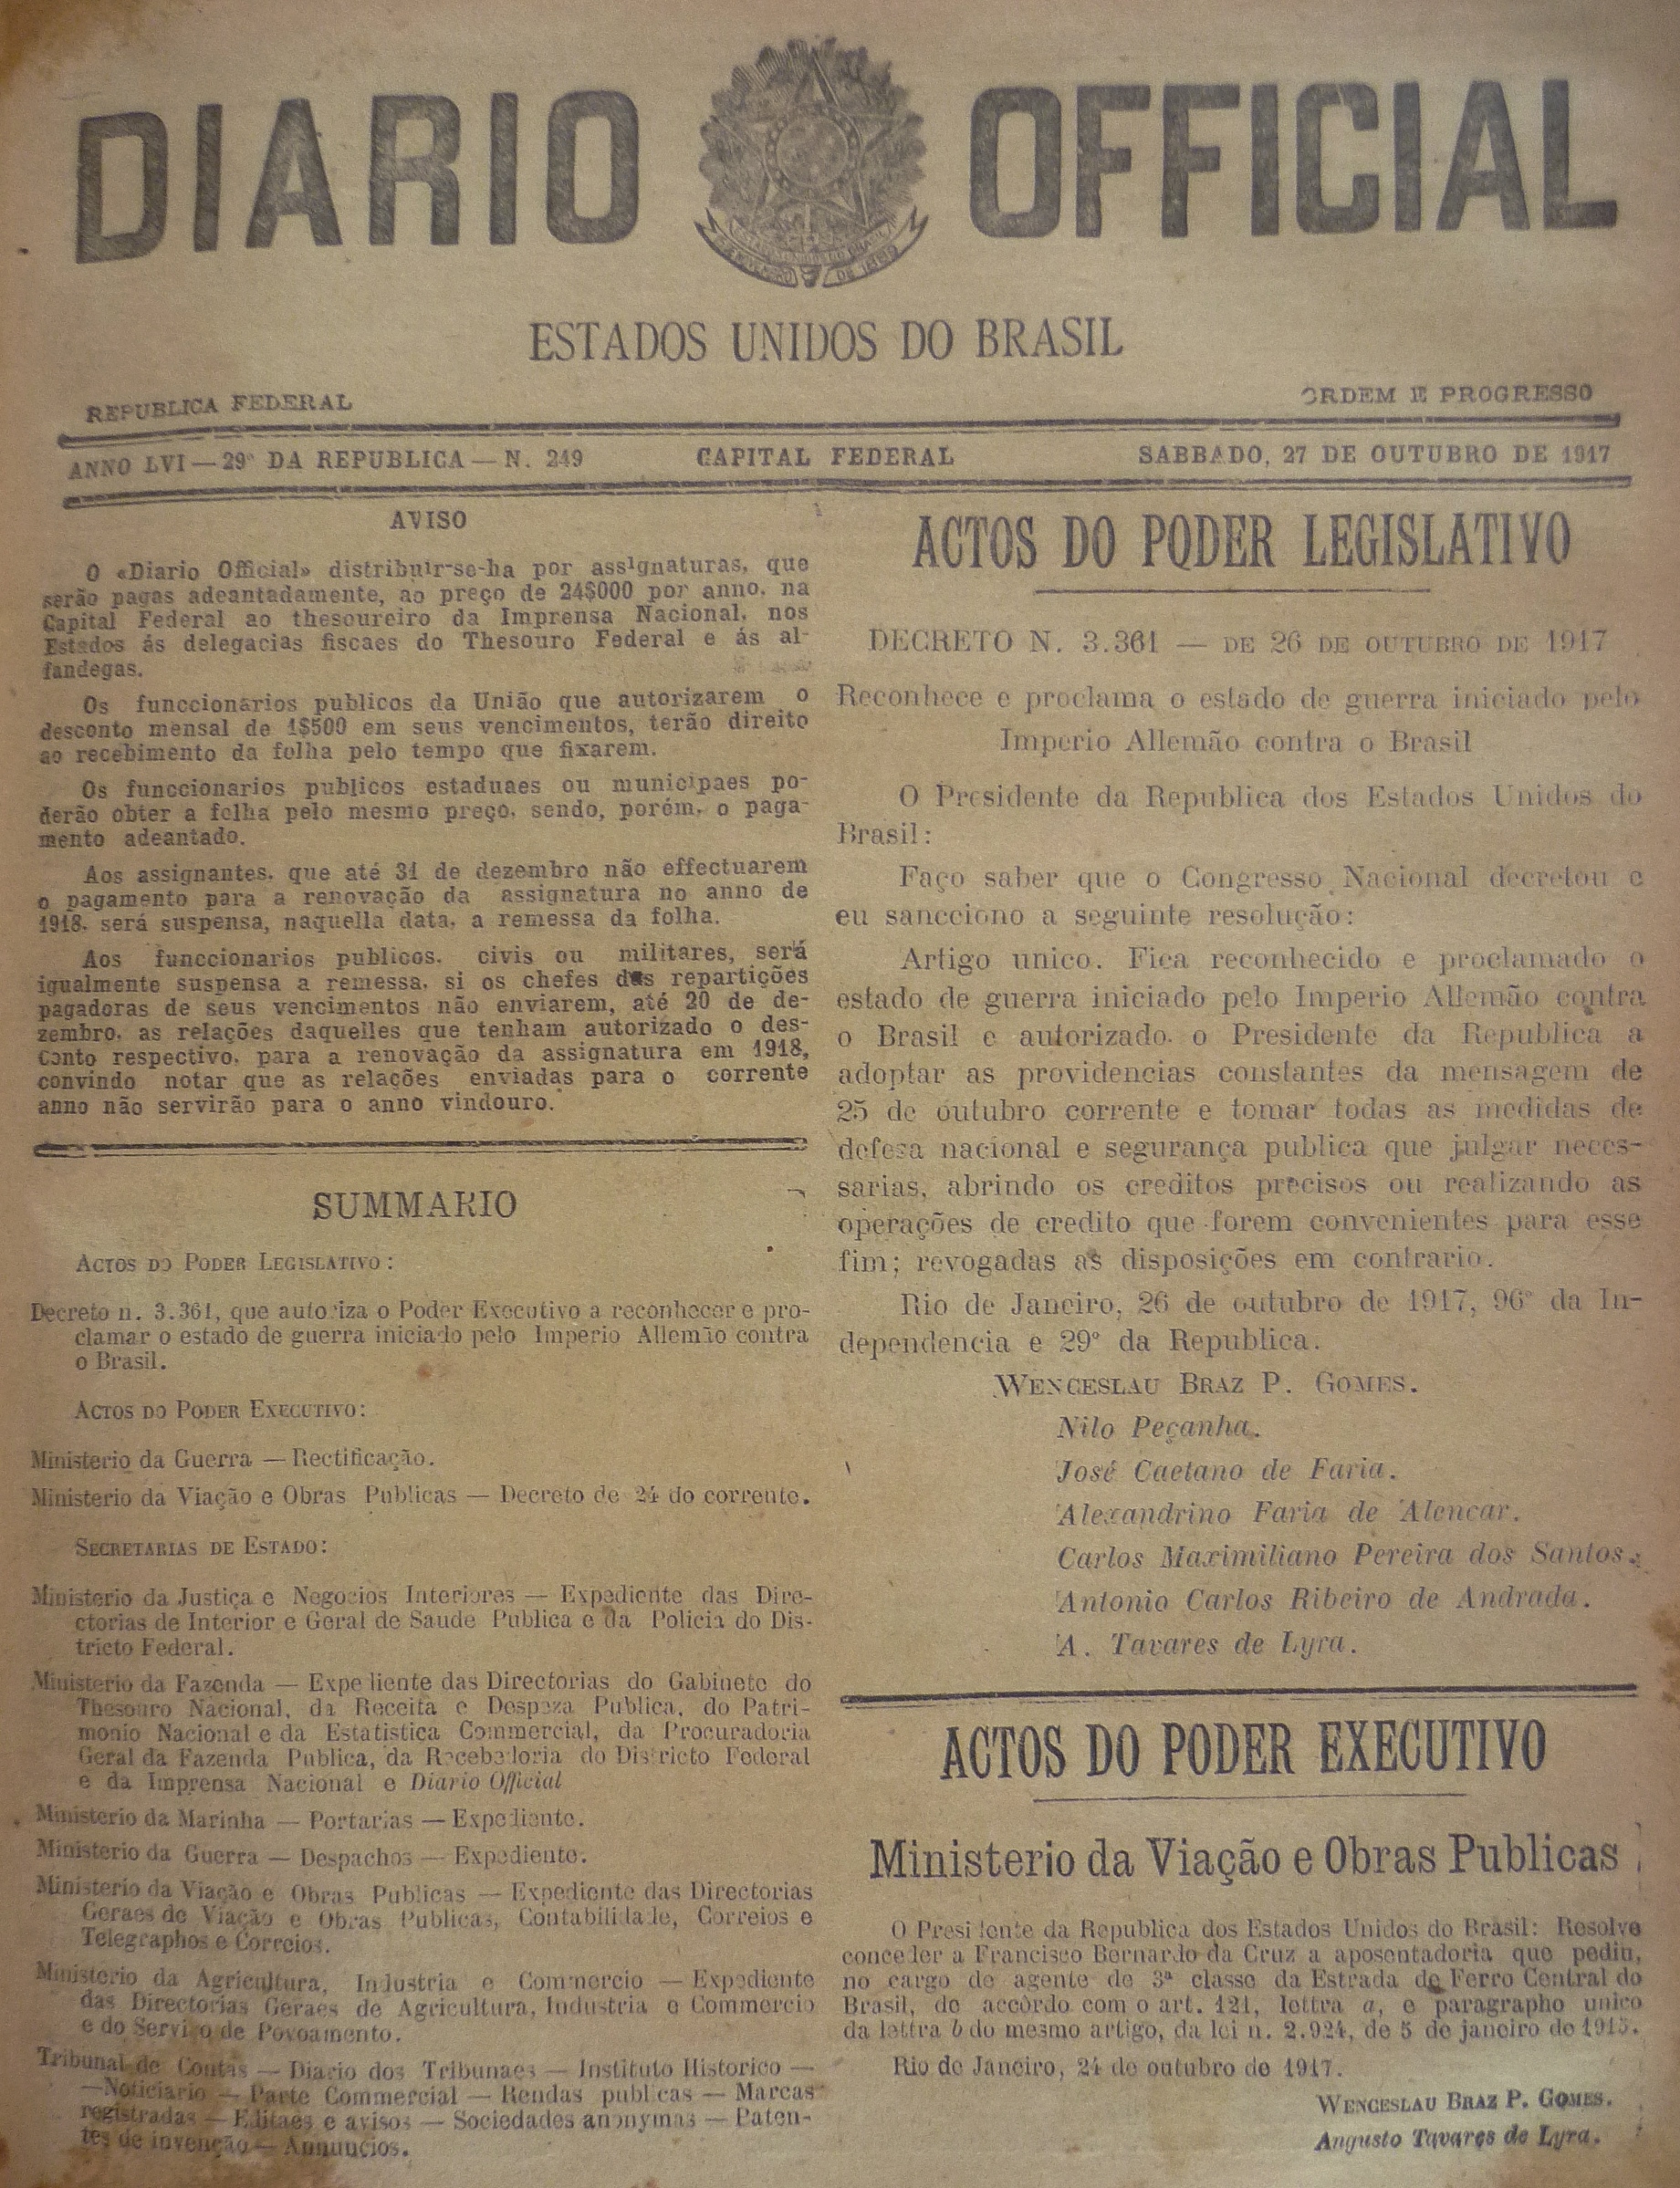 1ª Guerra Mundial – Reconhecimento e Proclamação do Estado de Guerra do Império Allemão contra o Brasil.